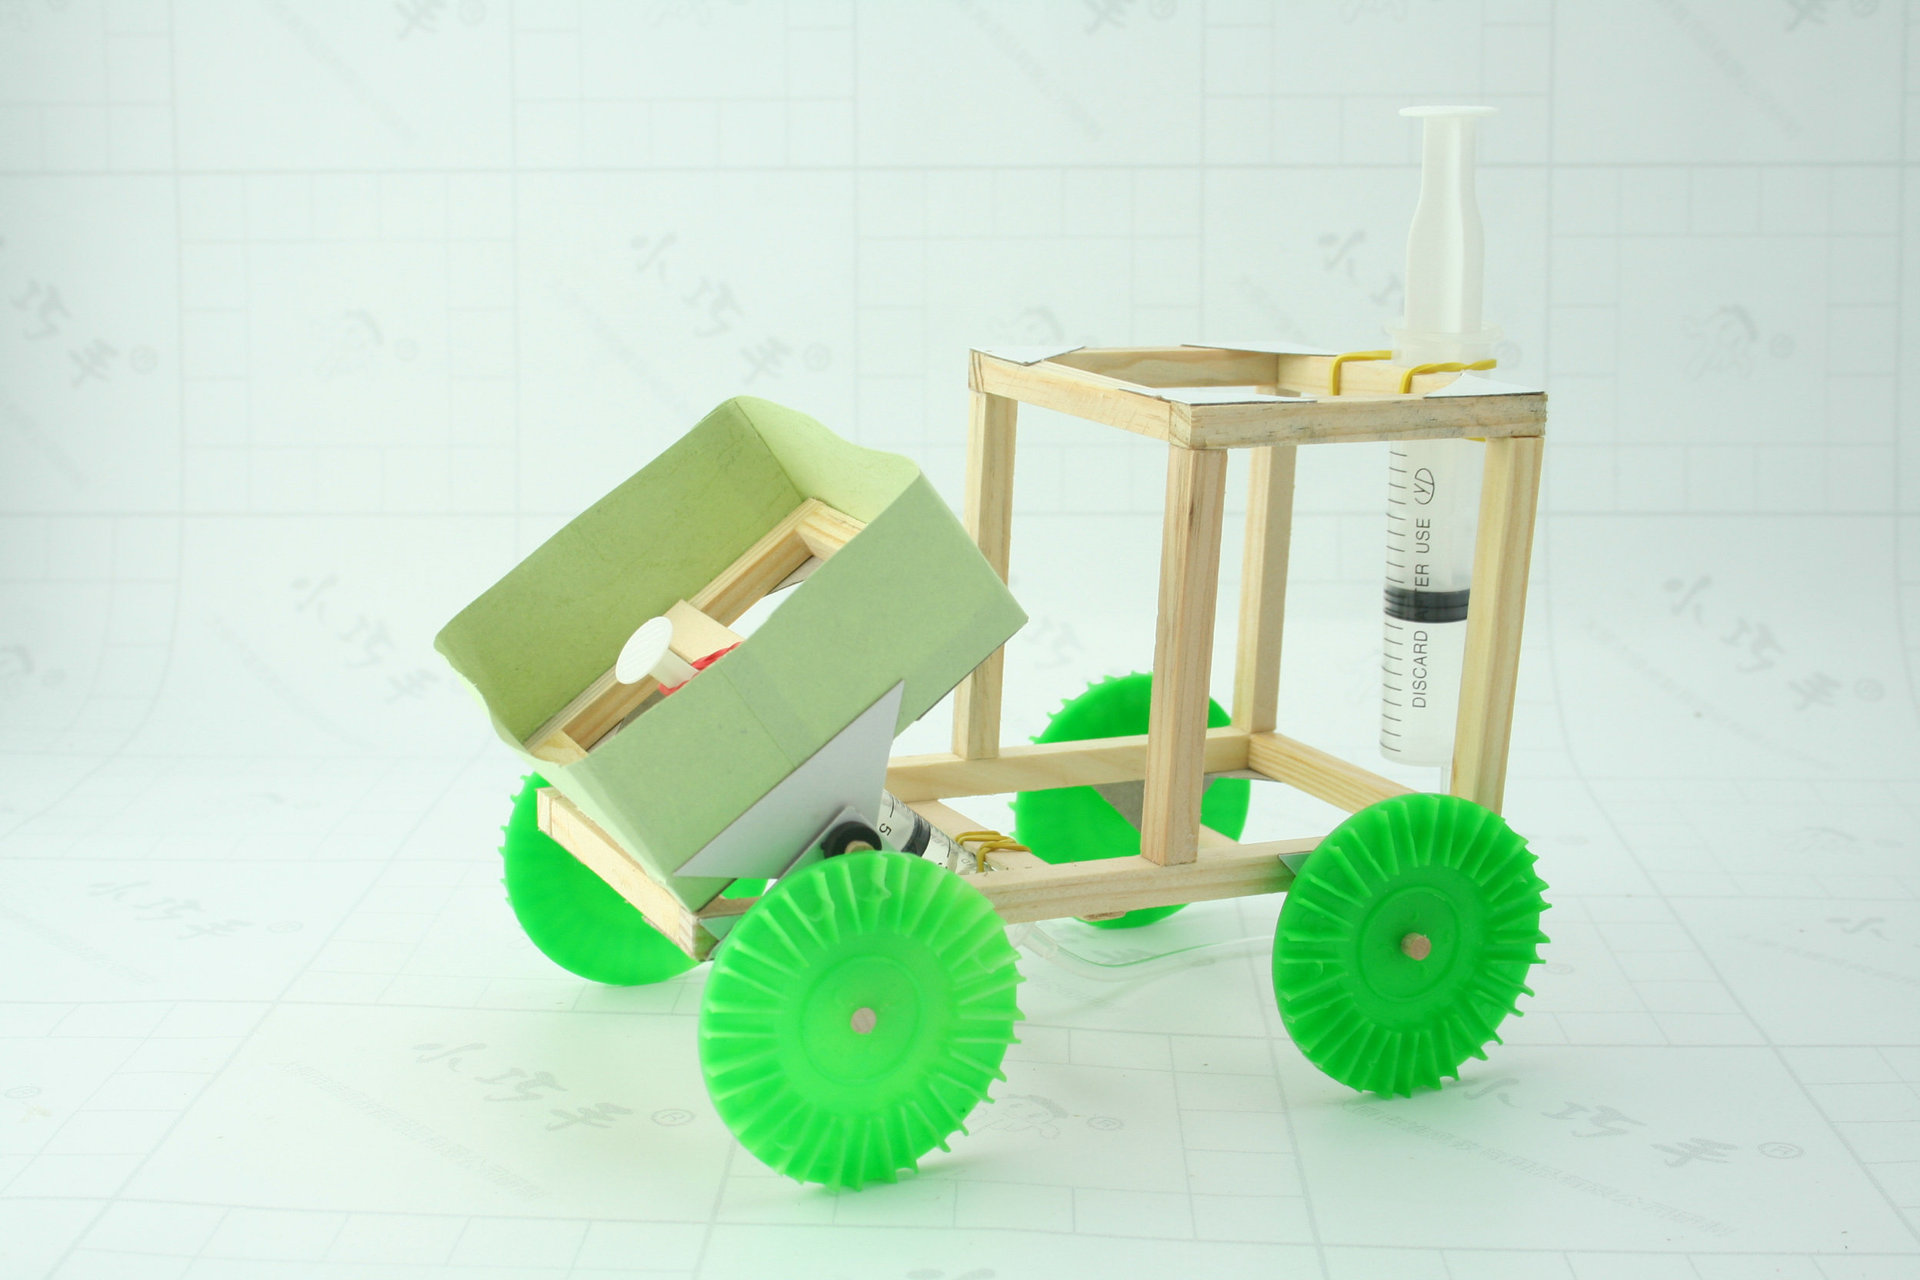 少儿手工diy 益智玩具教具 科技小制作 科普实验 推土机模型材料